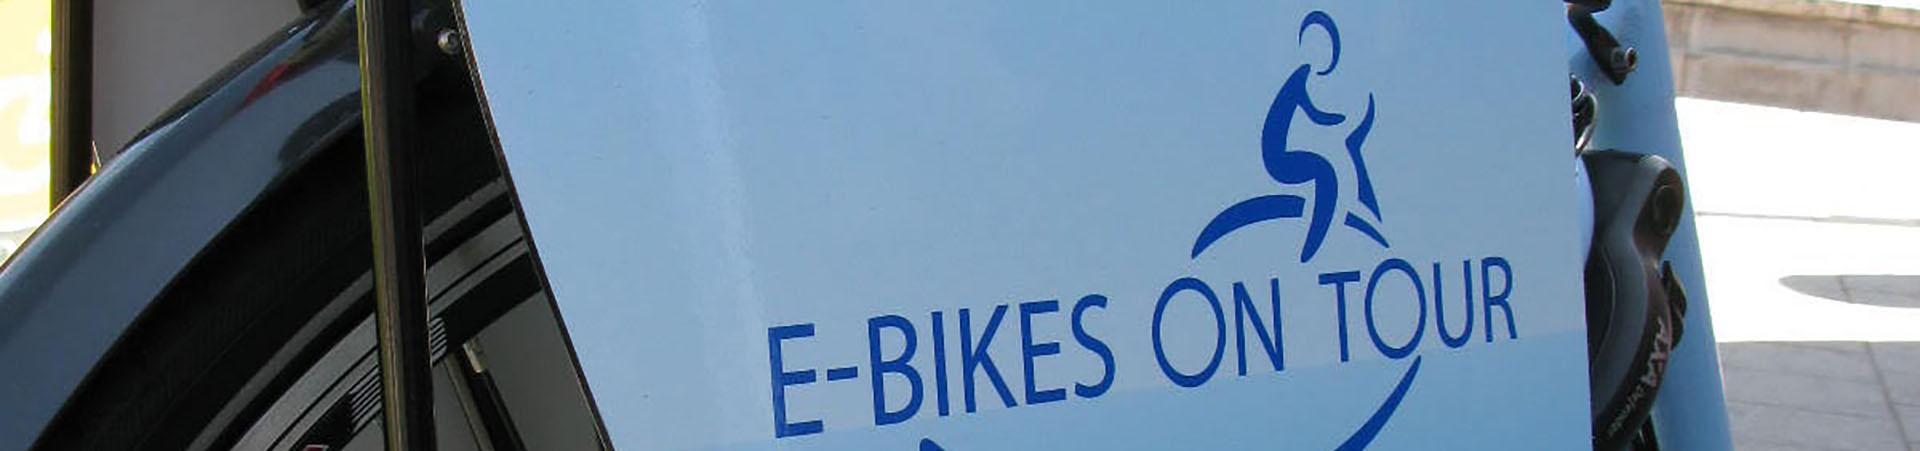 Preise, z.B. für E-Bike-Leihräder